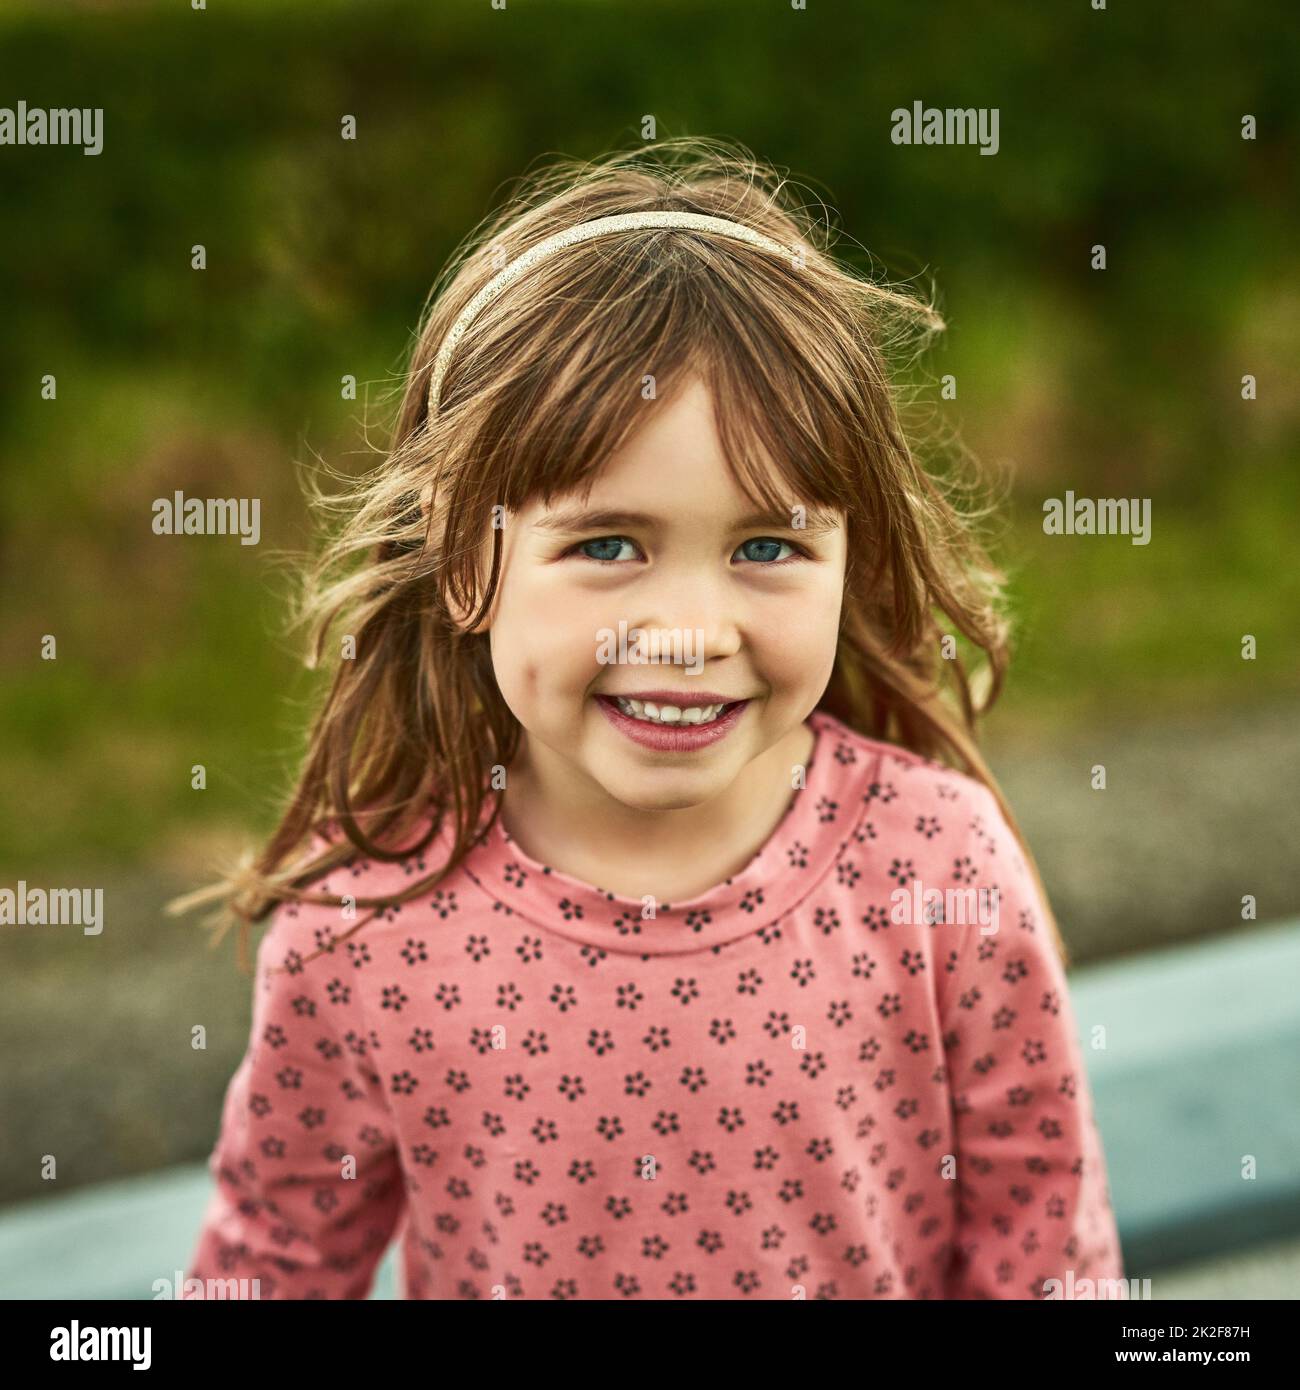 El mundo para los niños está lleno de diversión. Retrato de una adorable niña que se divierte al aire libre. Foto de stock